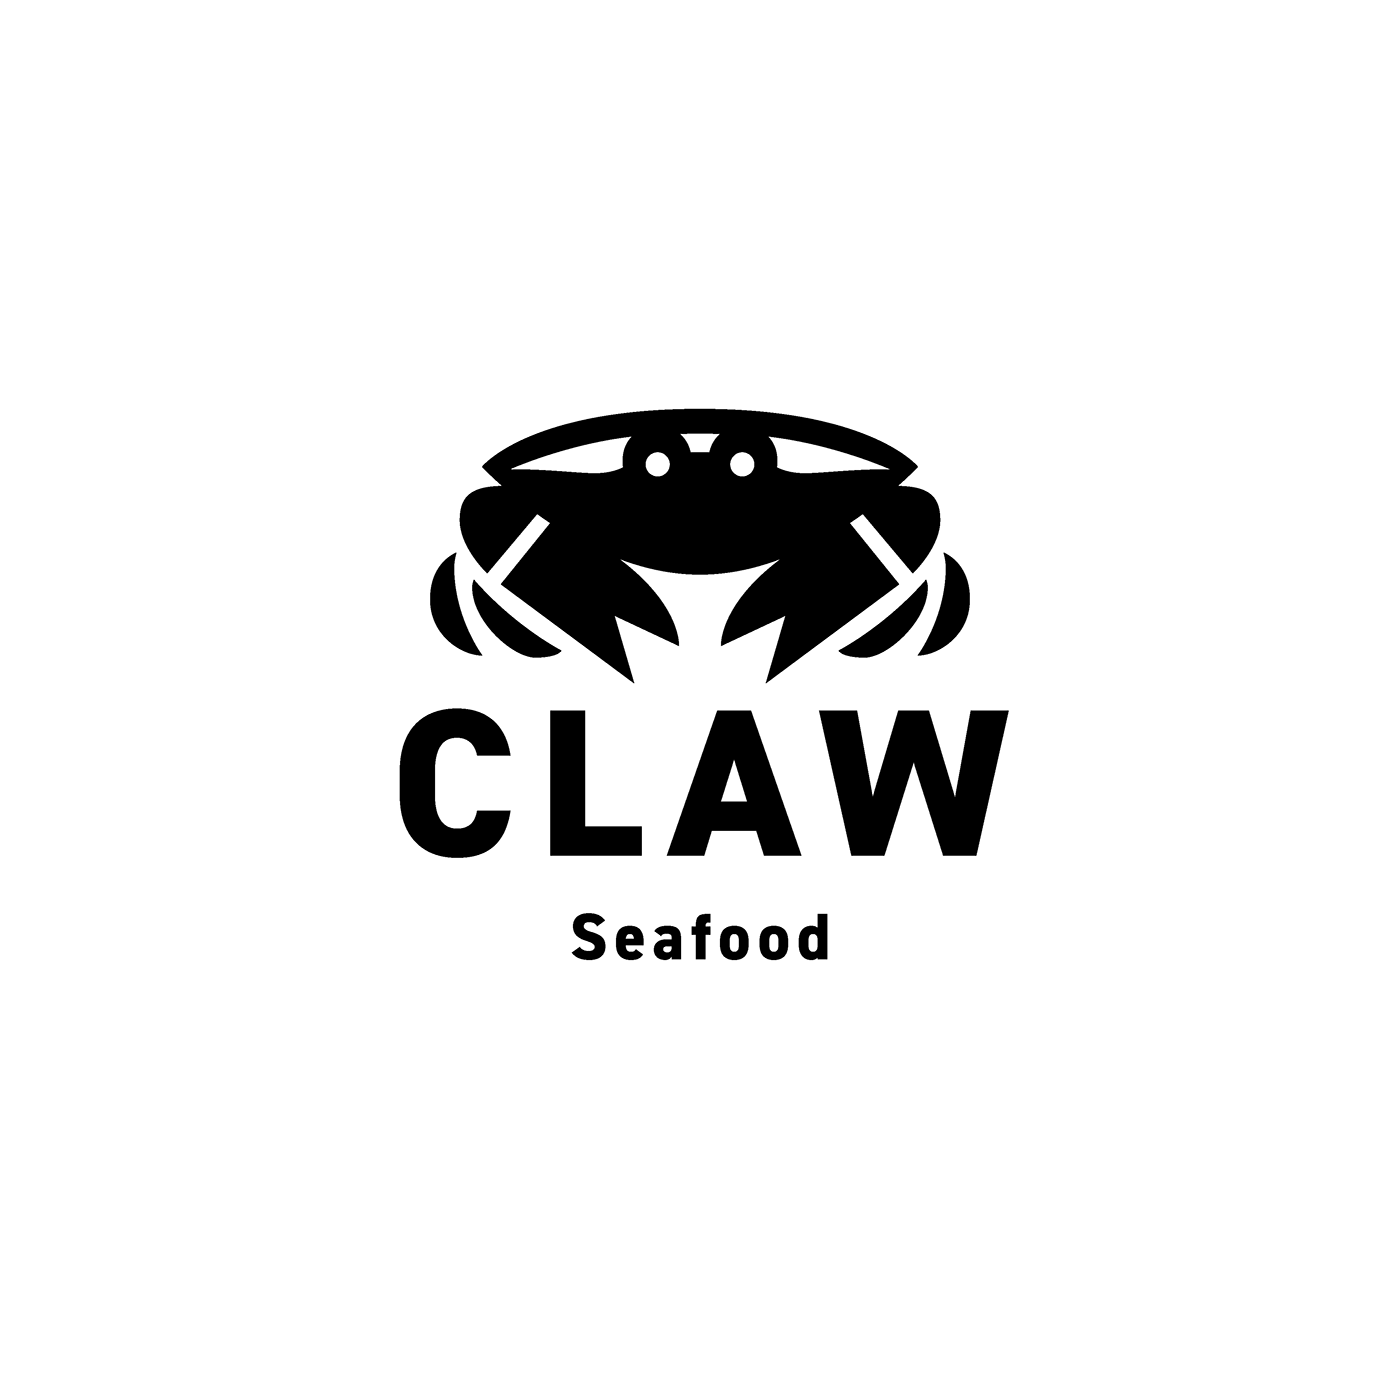 restaurant logo Seafood Logo  Seafood Restaurant crab logo